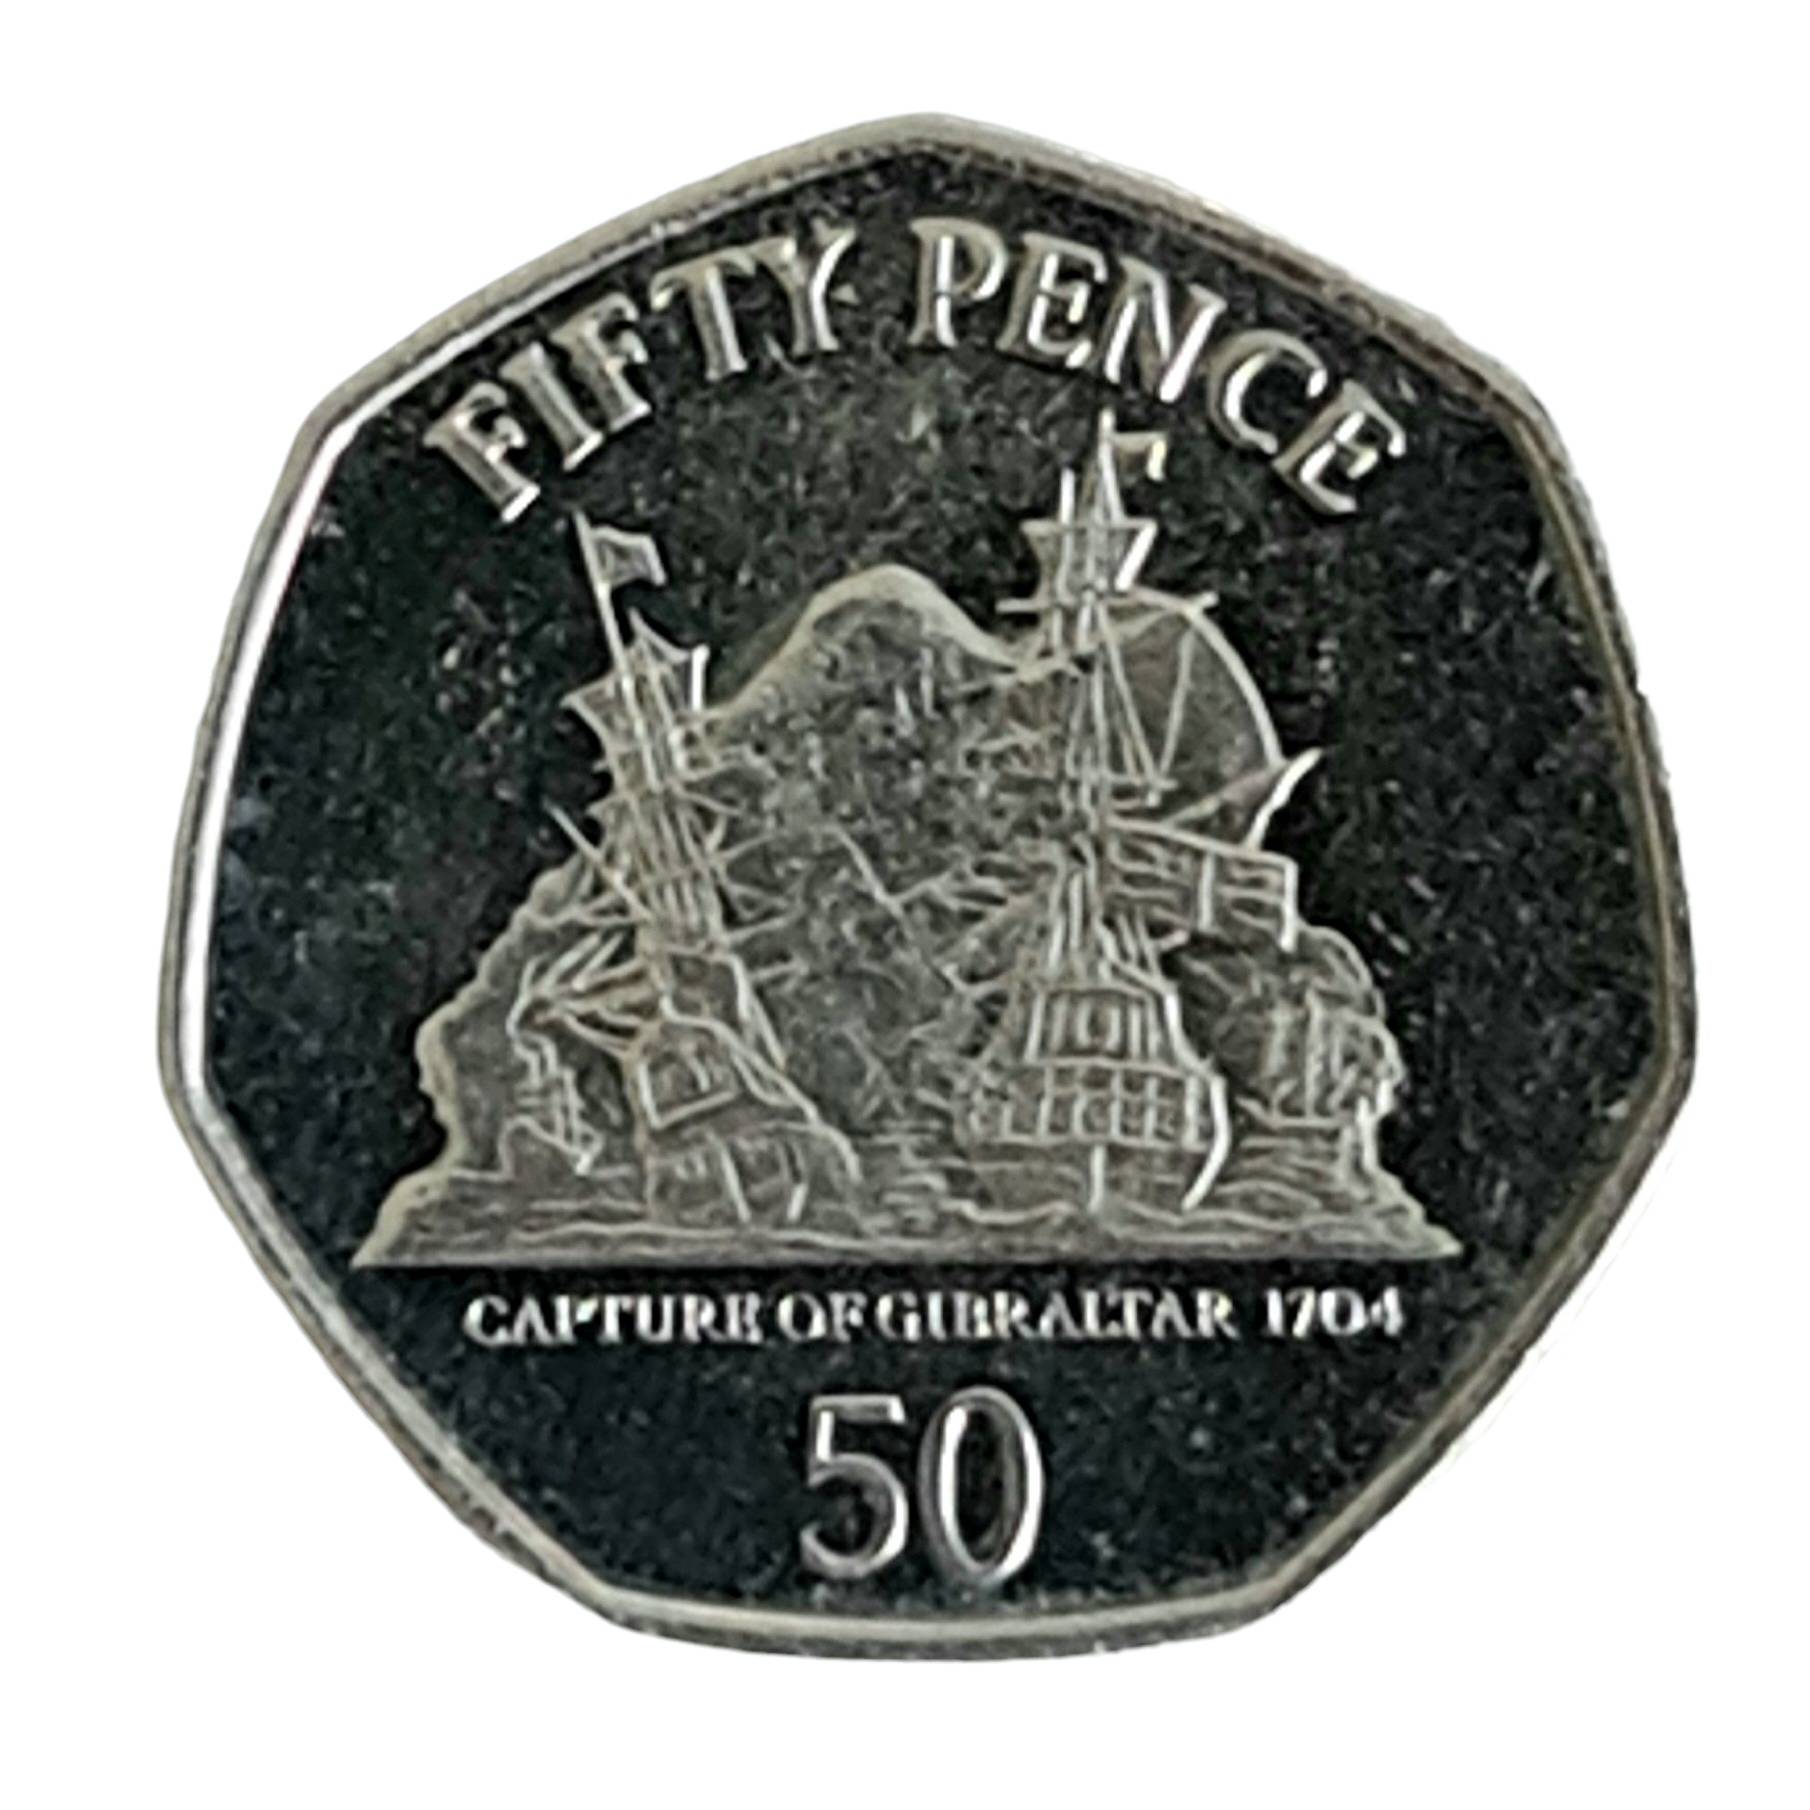 Capture of Gibraltar 50p coin